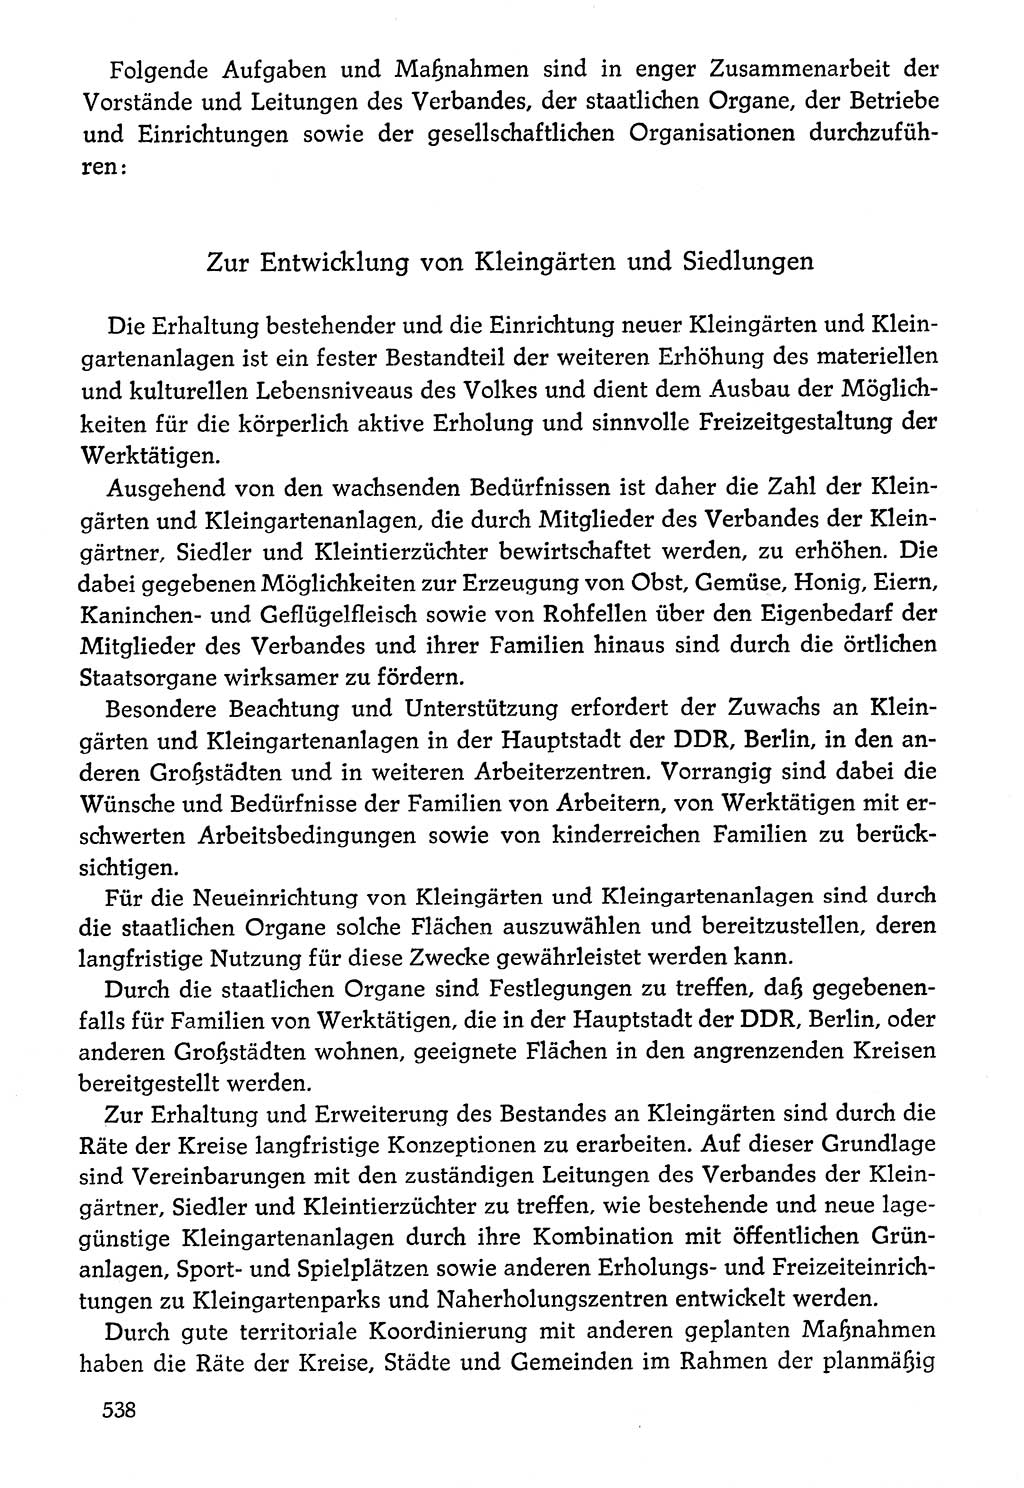 Dokumente der Sozialistischen Einheitspartei Deutschlands (SED) [Deutsche Demokratische Republik (DDR)] 1976-1977, Seite 538 (Dok. SED DDR 1976-1977, S. 538)